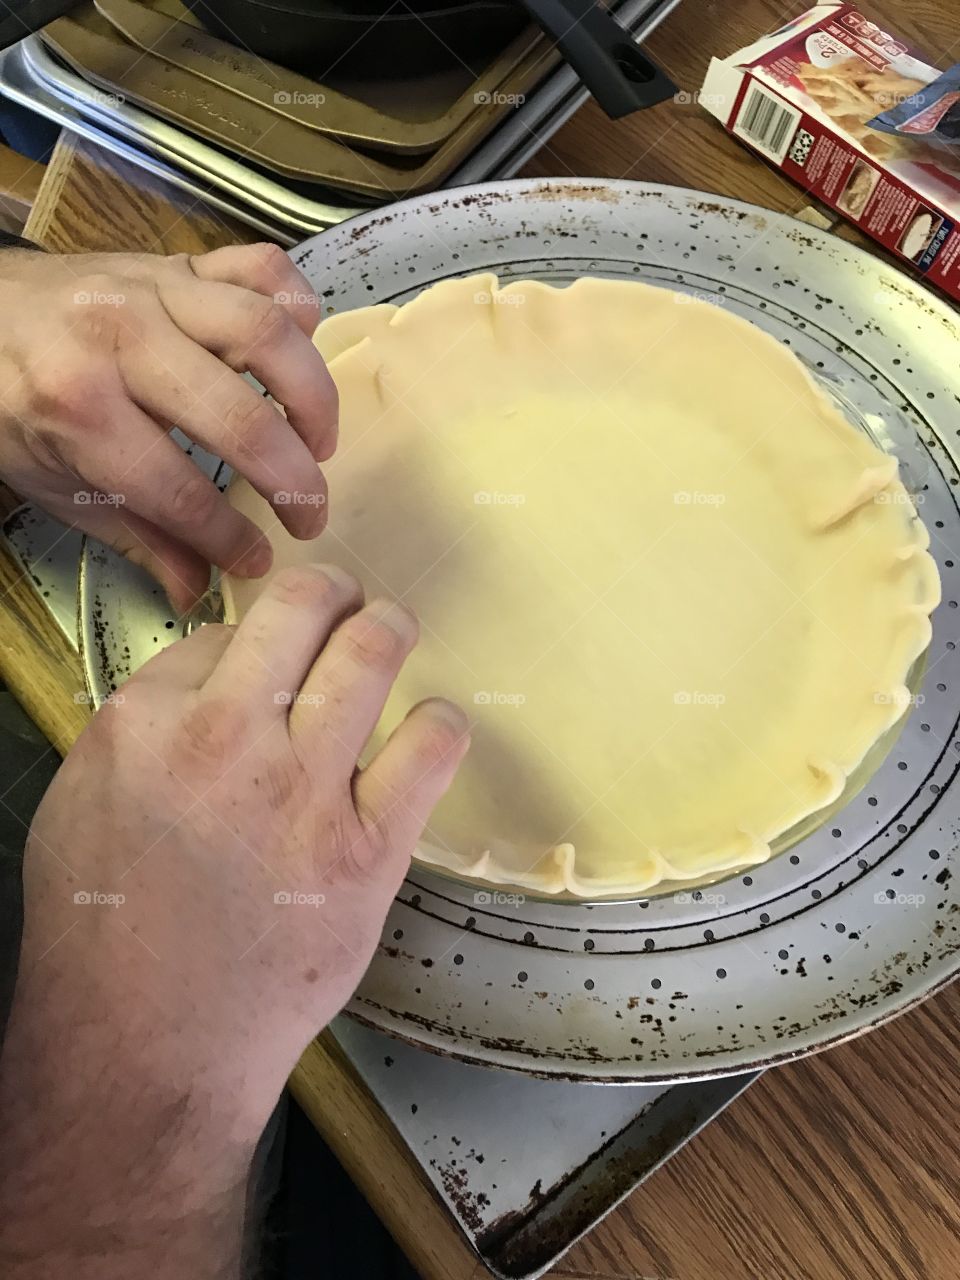 Making pies